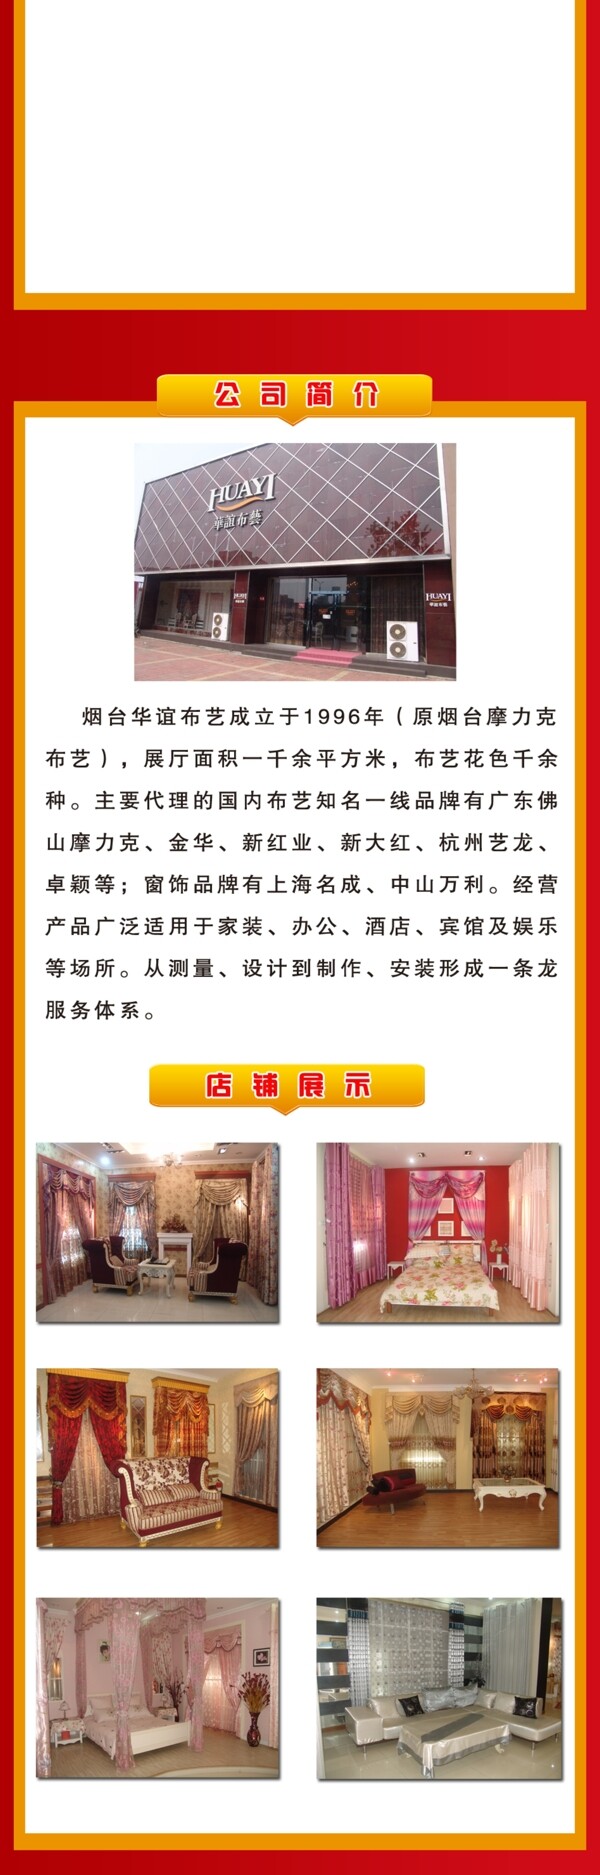 华谊布艺活动页面图片